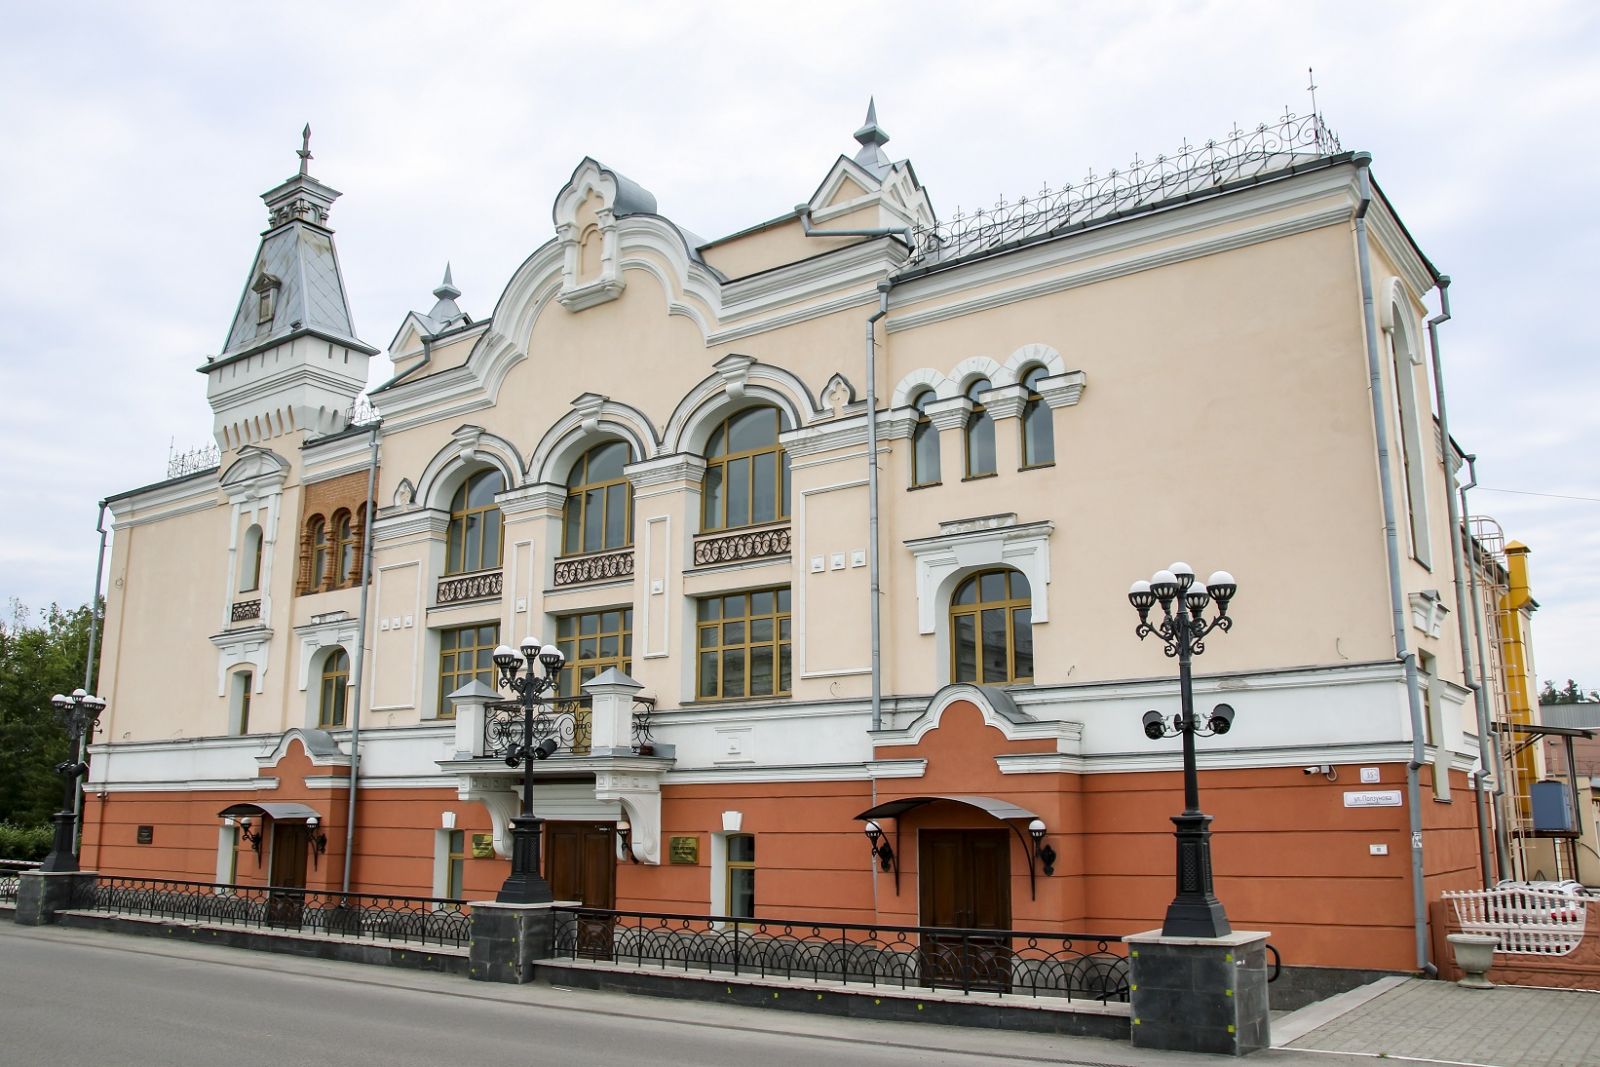 Компания реконструировала здания Государственной филармонии Алтайского края